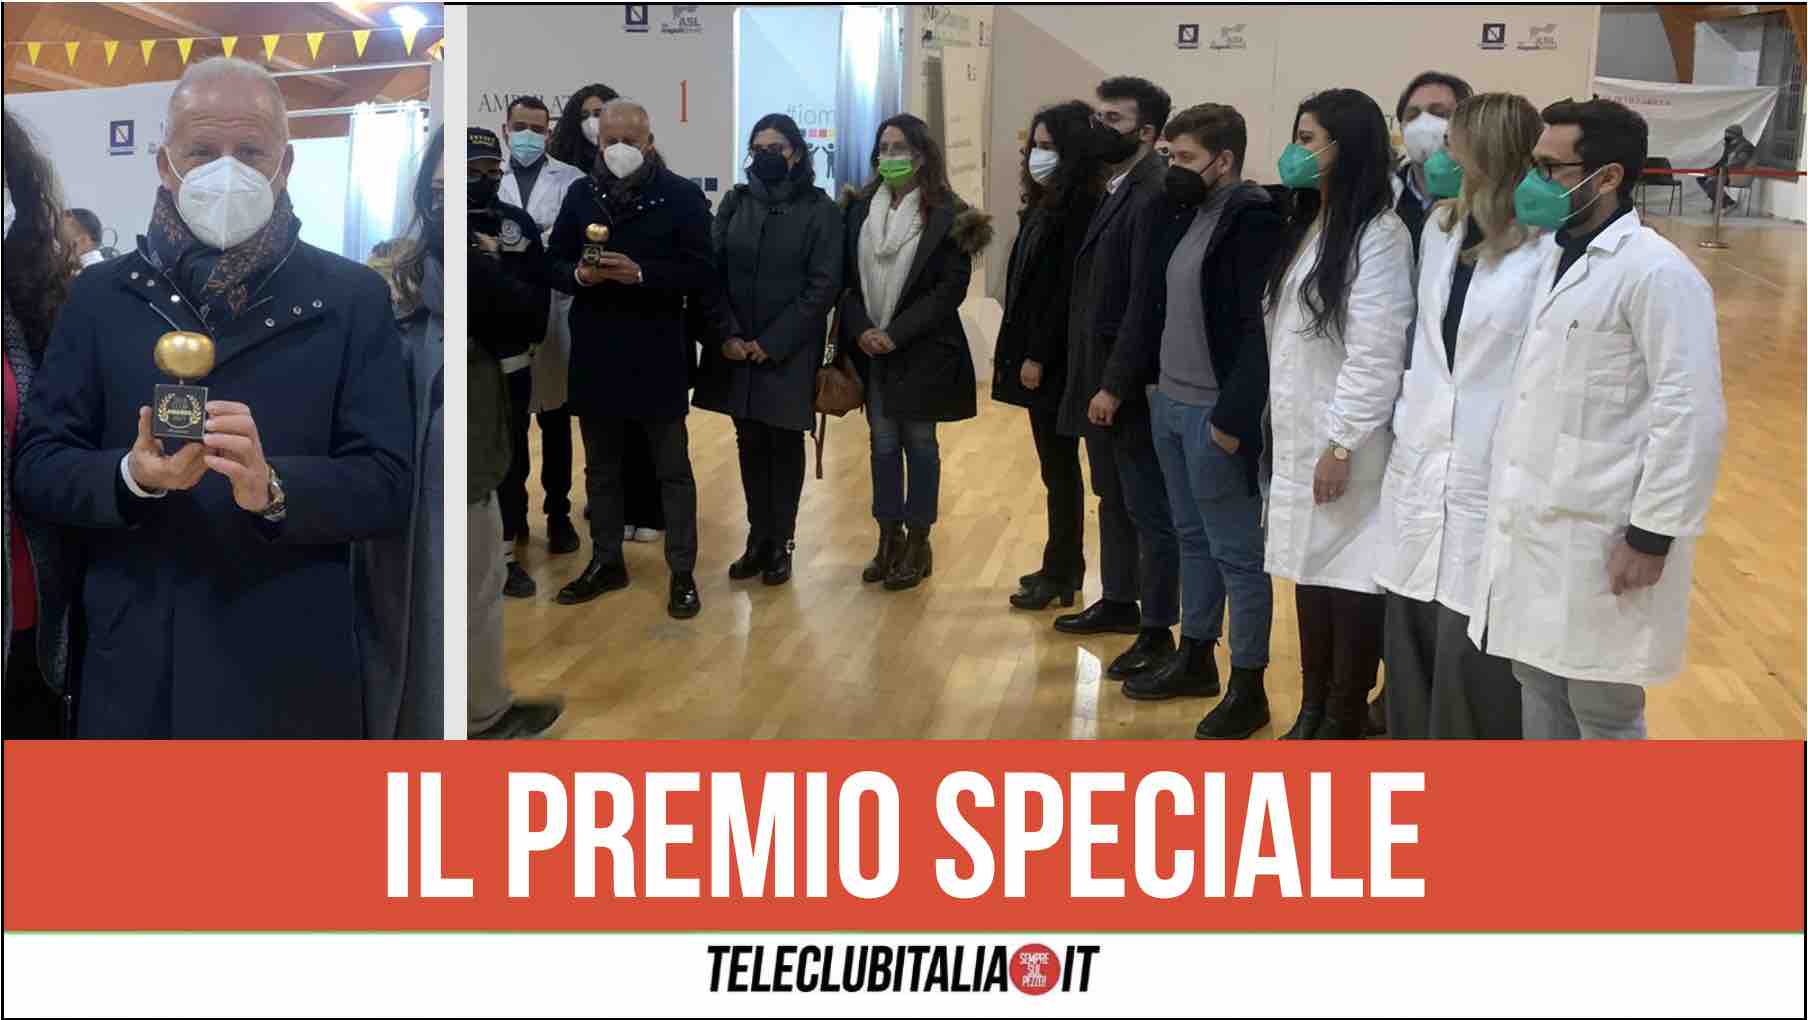 medici vaccinatori la mela d'oro awards teleclubitalia